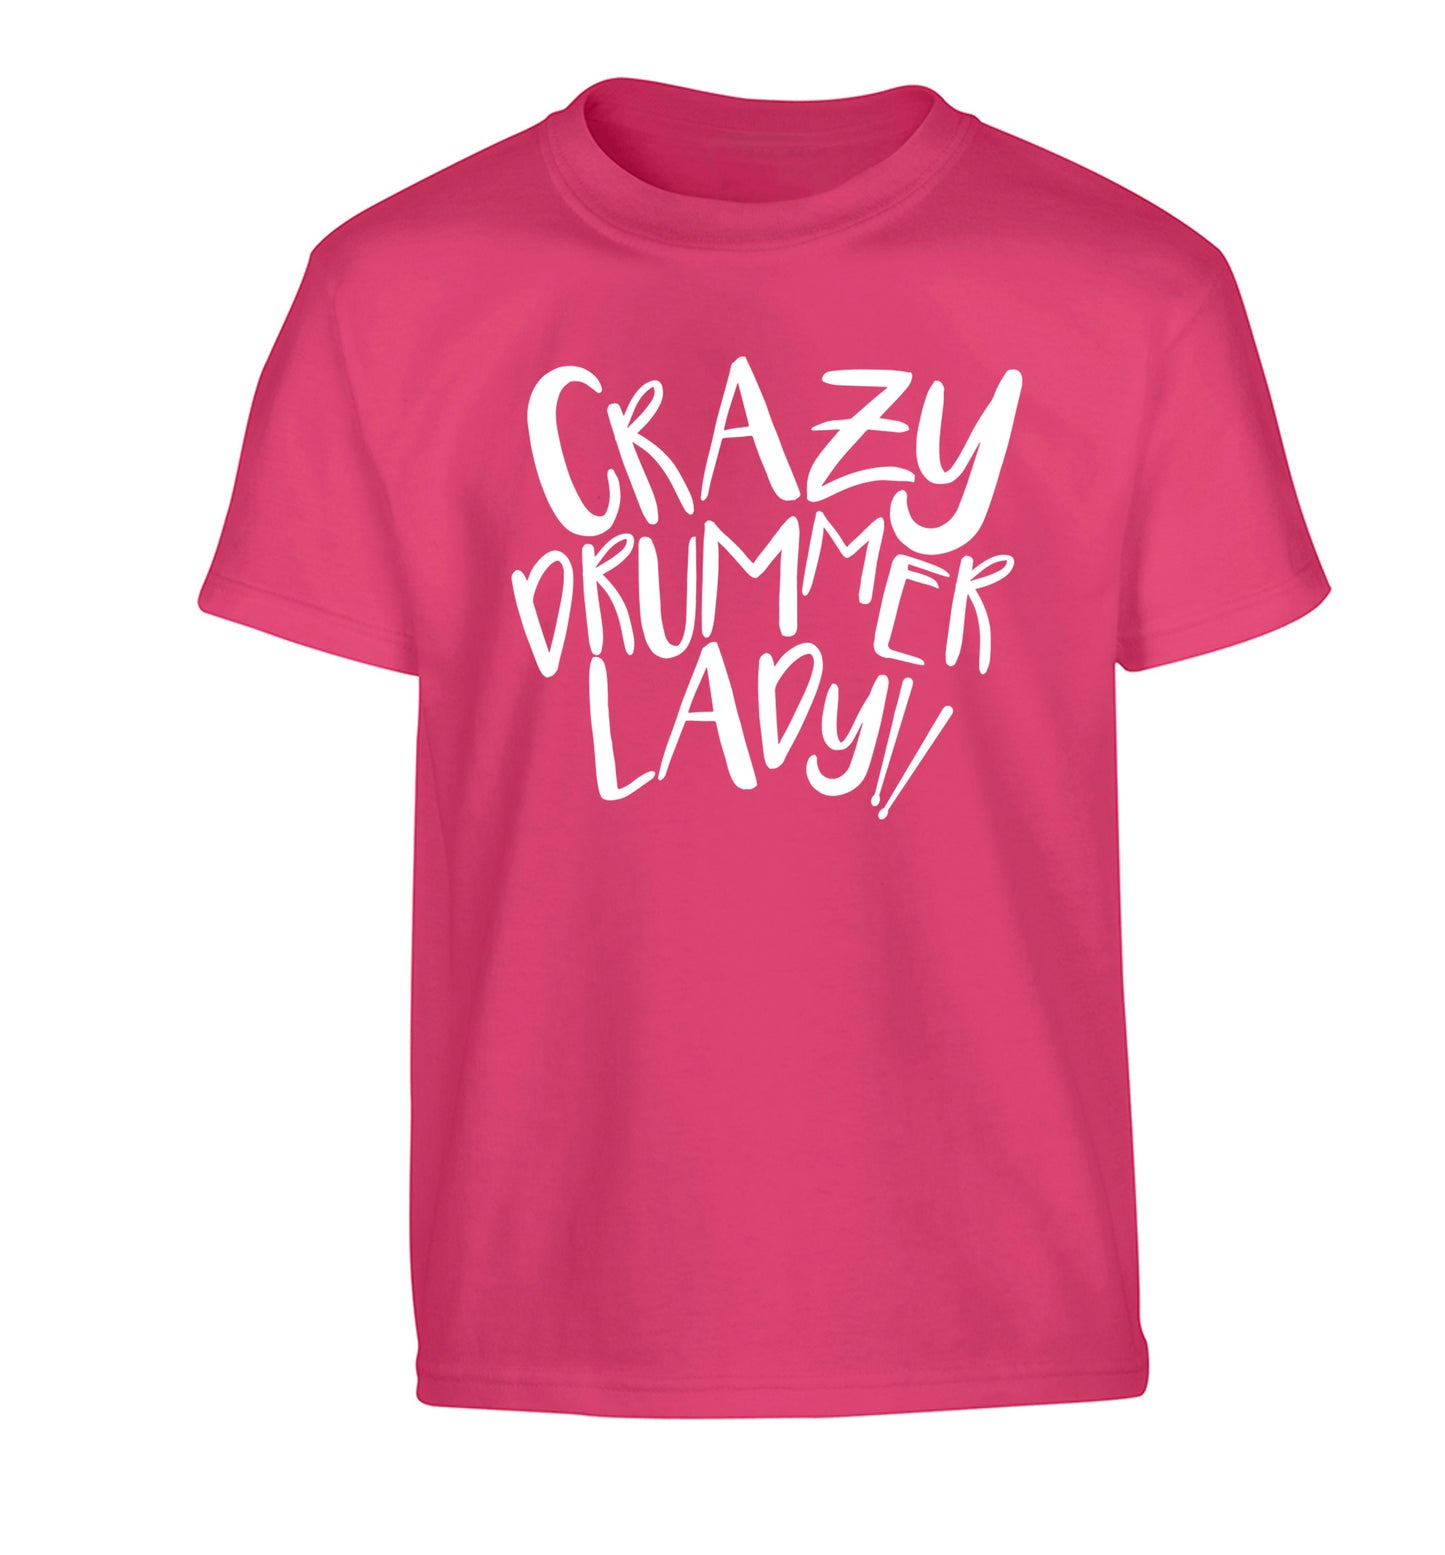 Crazy drummer lady Children's pink Tshirt 12-14 Years